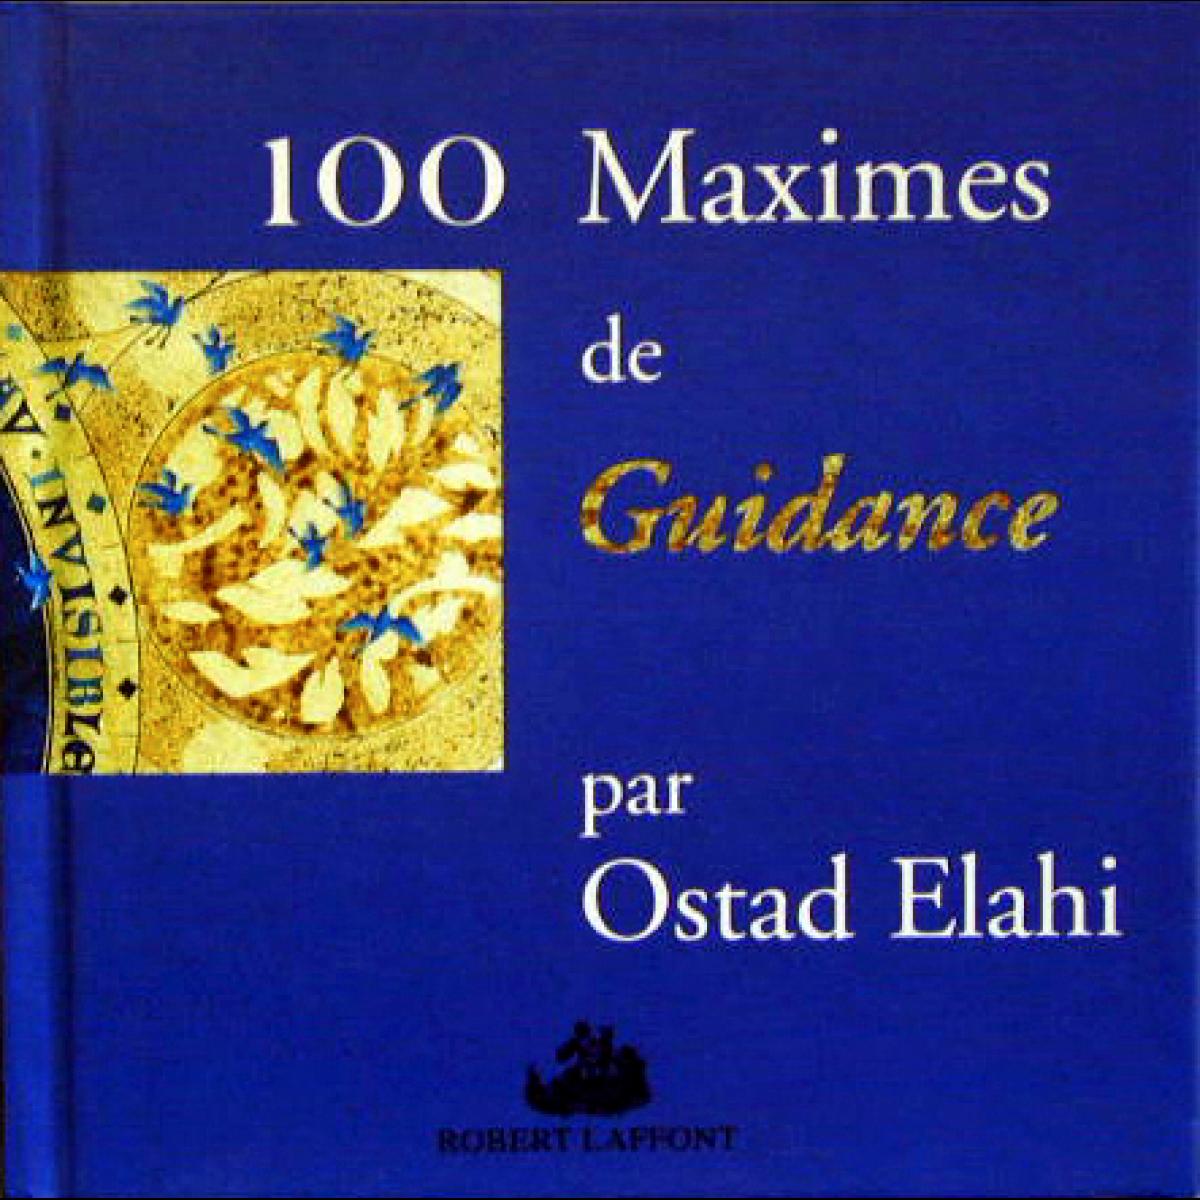 100 Maximes de guidance